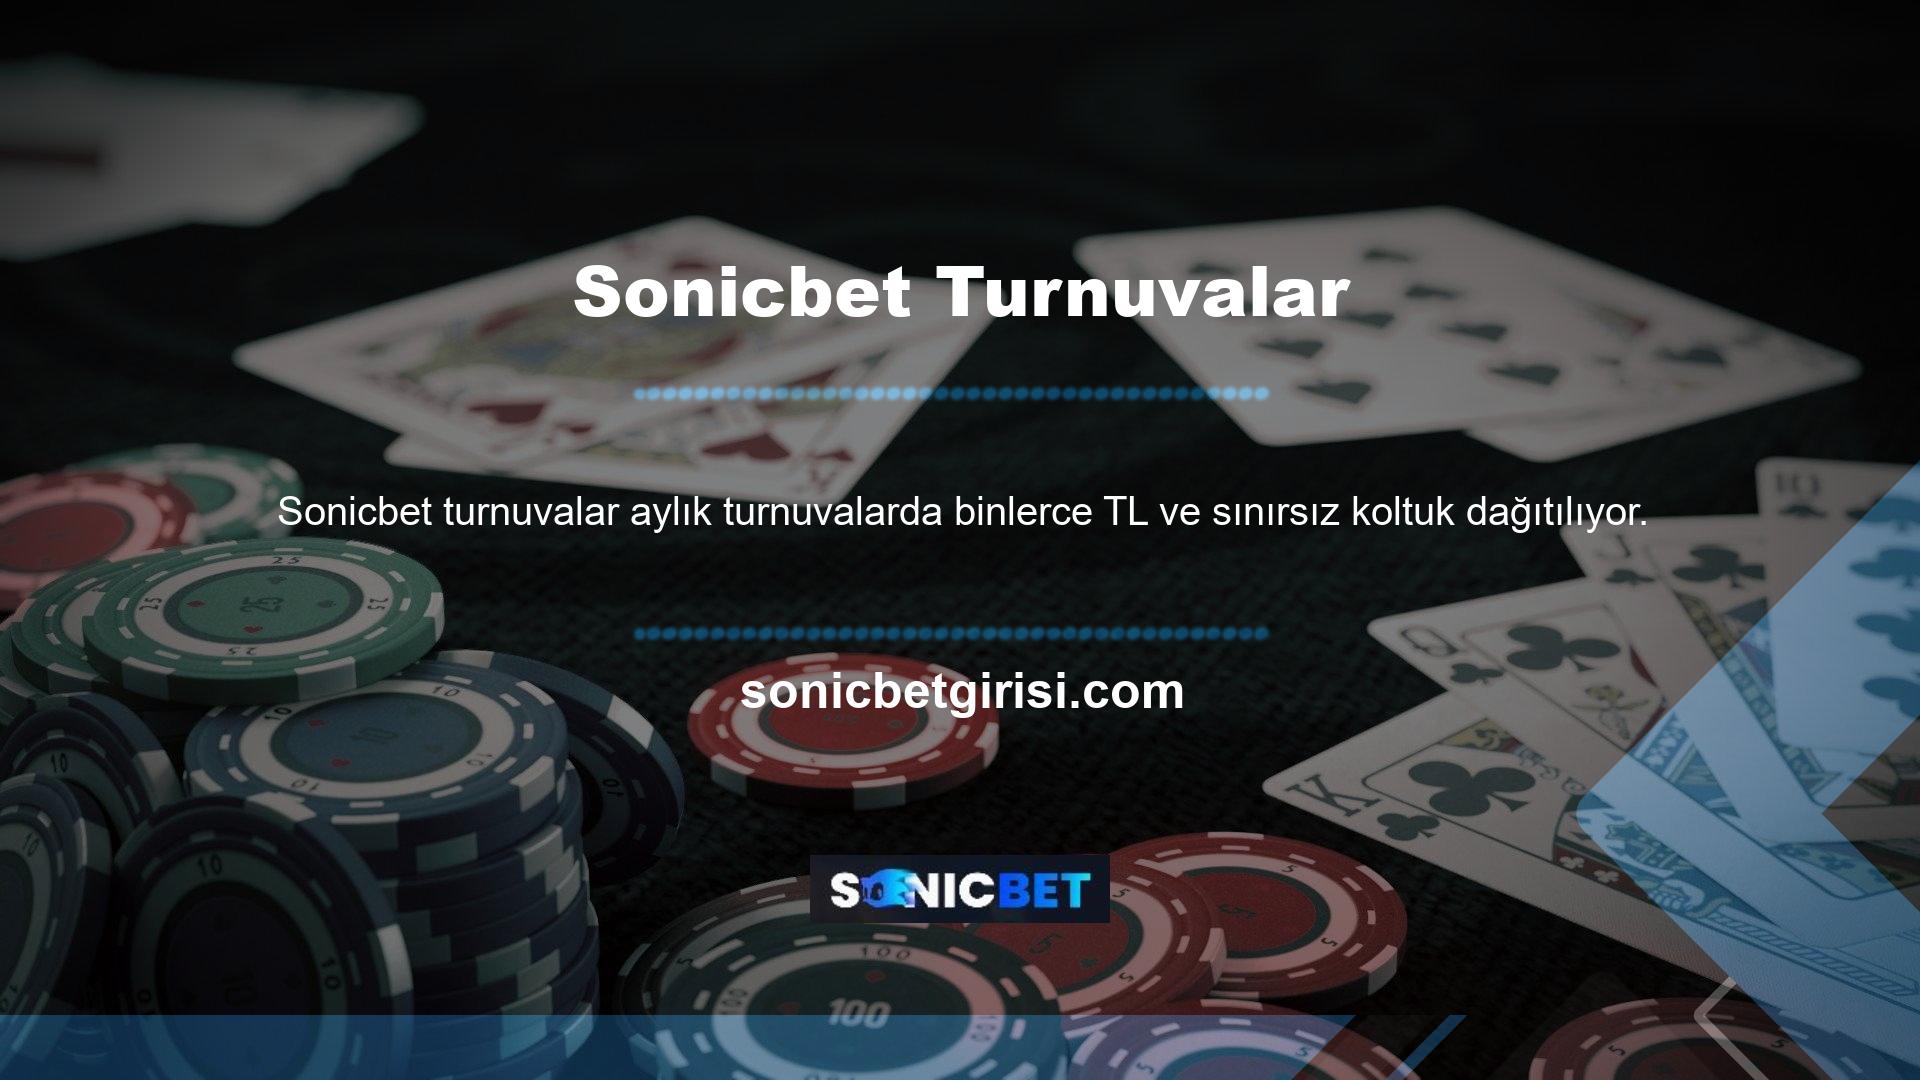 BTK (Bilgi Teknolojileri ve İletişim Bürosu), casino hayranlarının Türk casino sitelerinin yasa dışı olduğunu bilmesi nedeniyle tib'e sahiptir